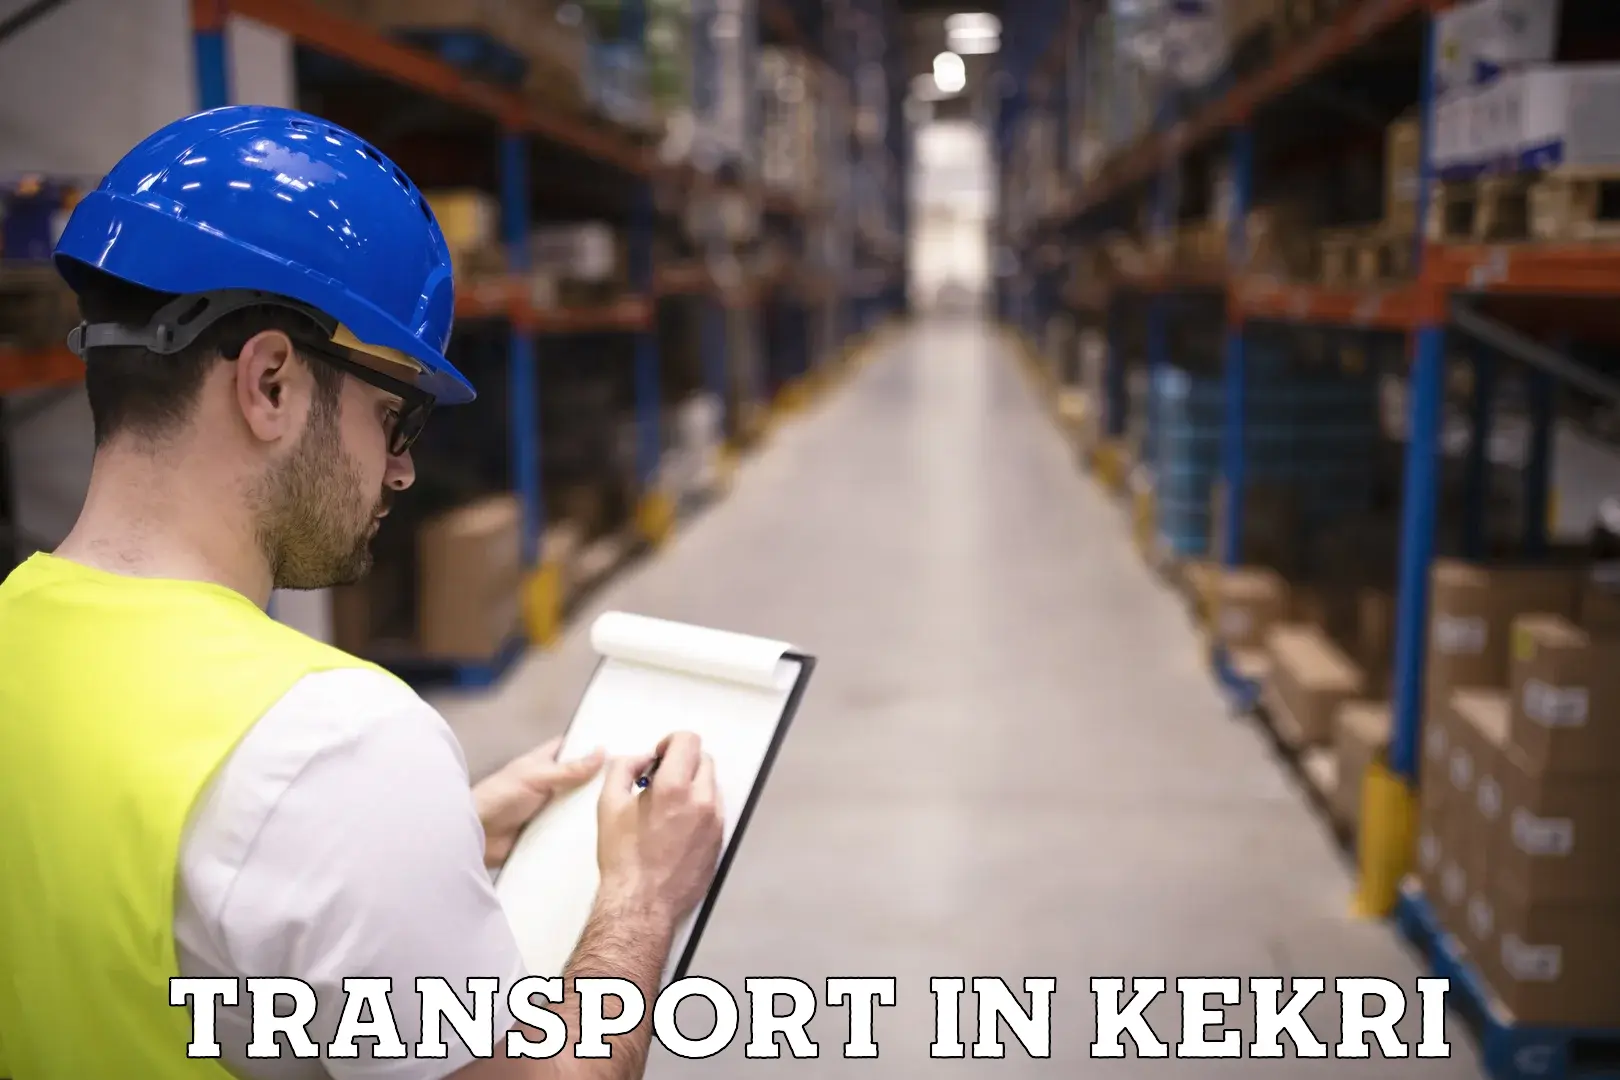 Transportation solution services in Kekri